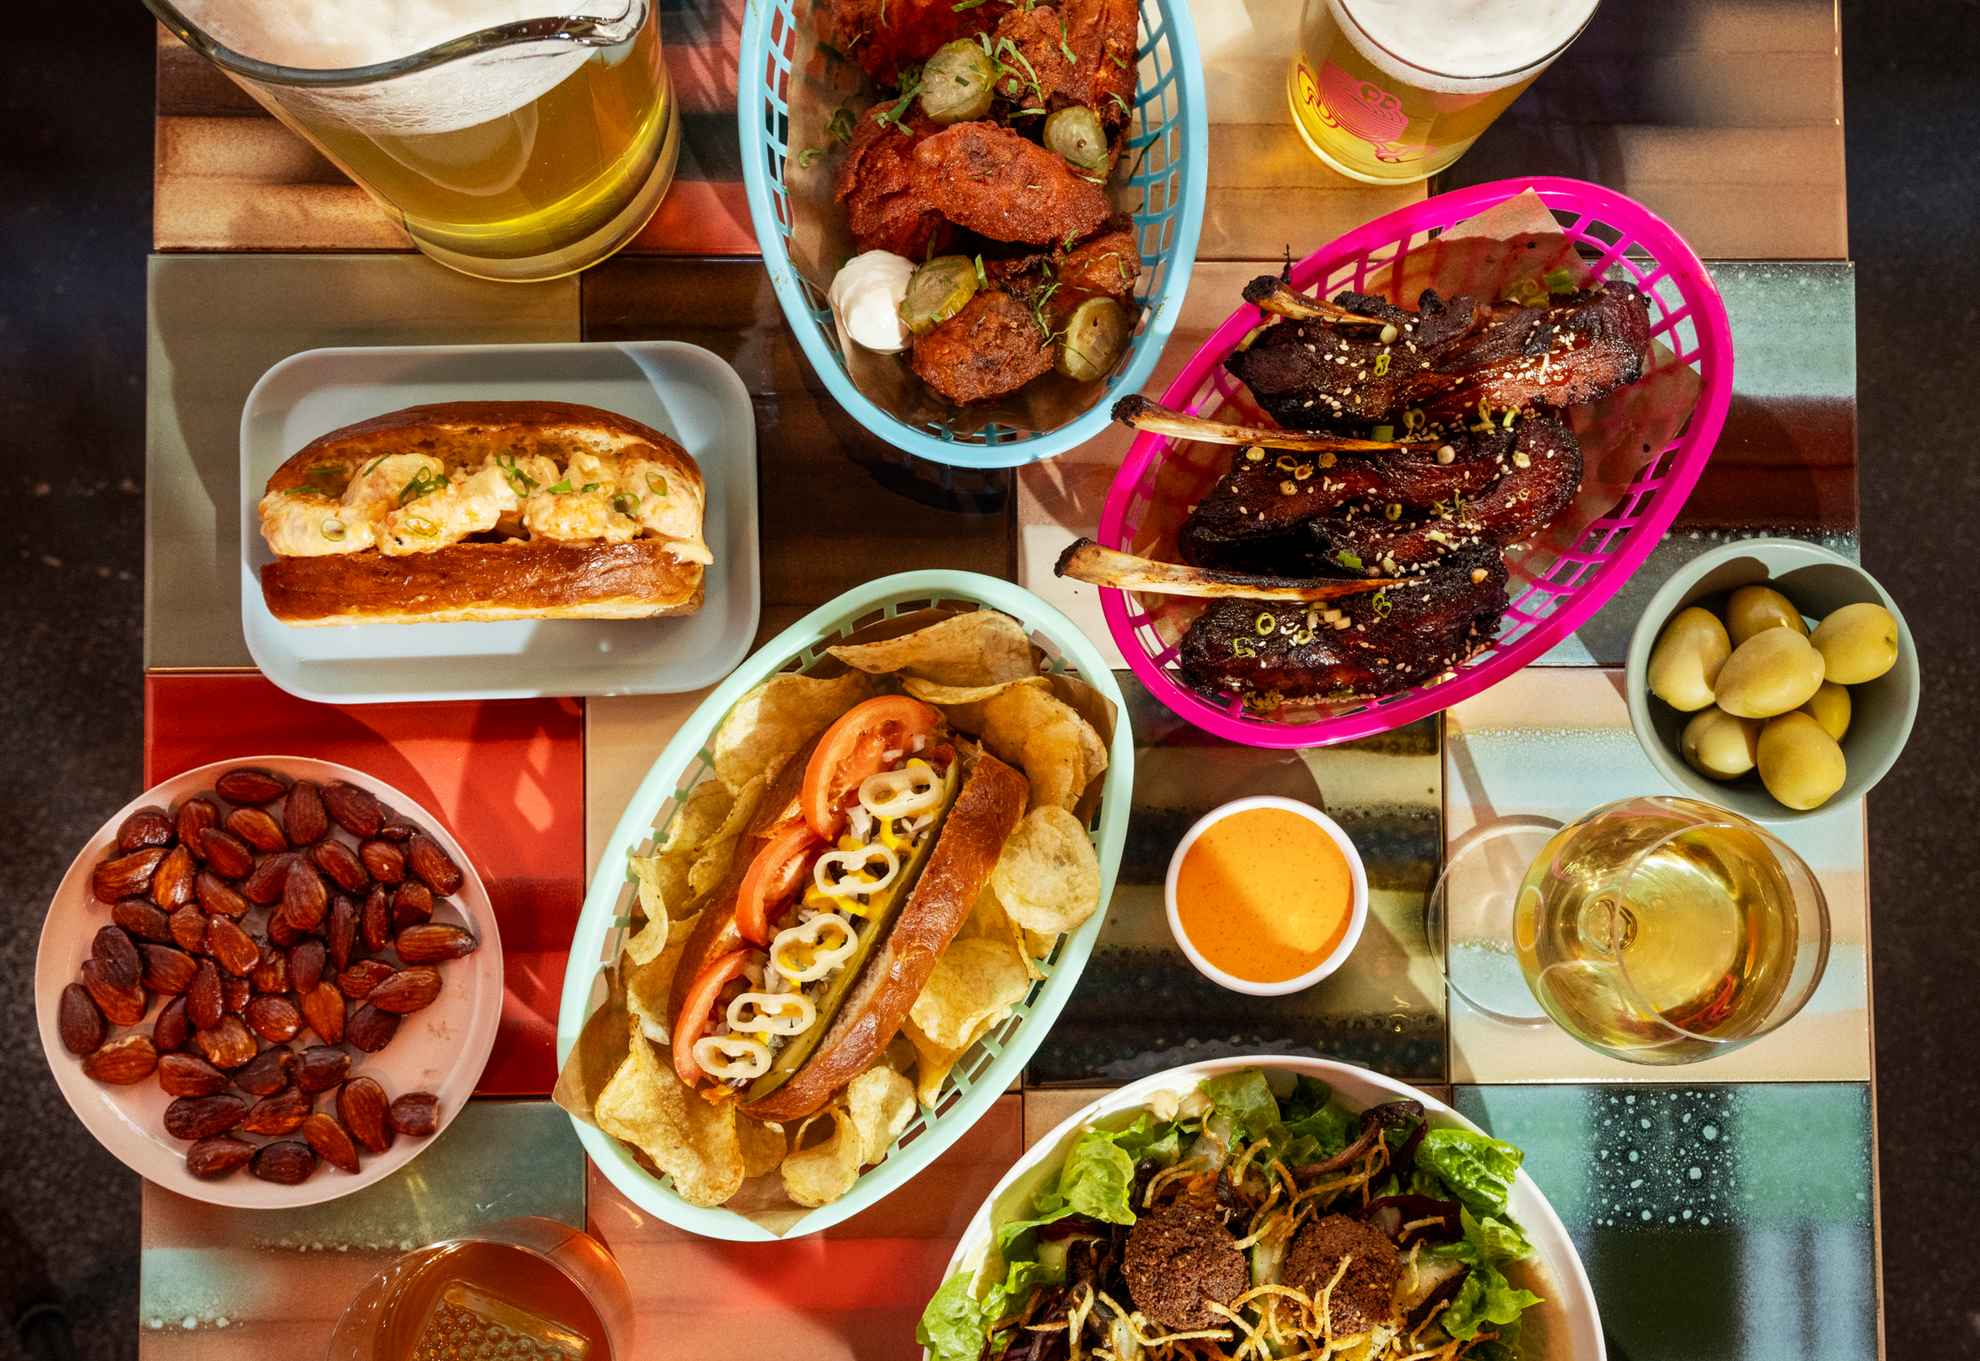 Une table carrée remplie de streetfood colorés dans différents paniers et sur des assiettes, ainsi que des verres de bière et de vin.